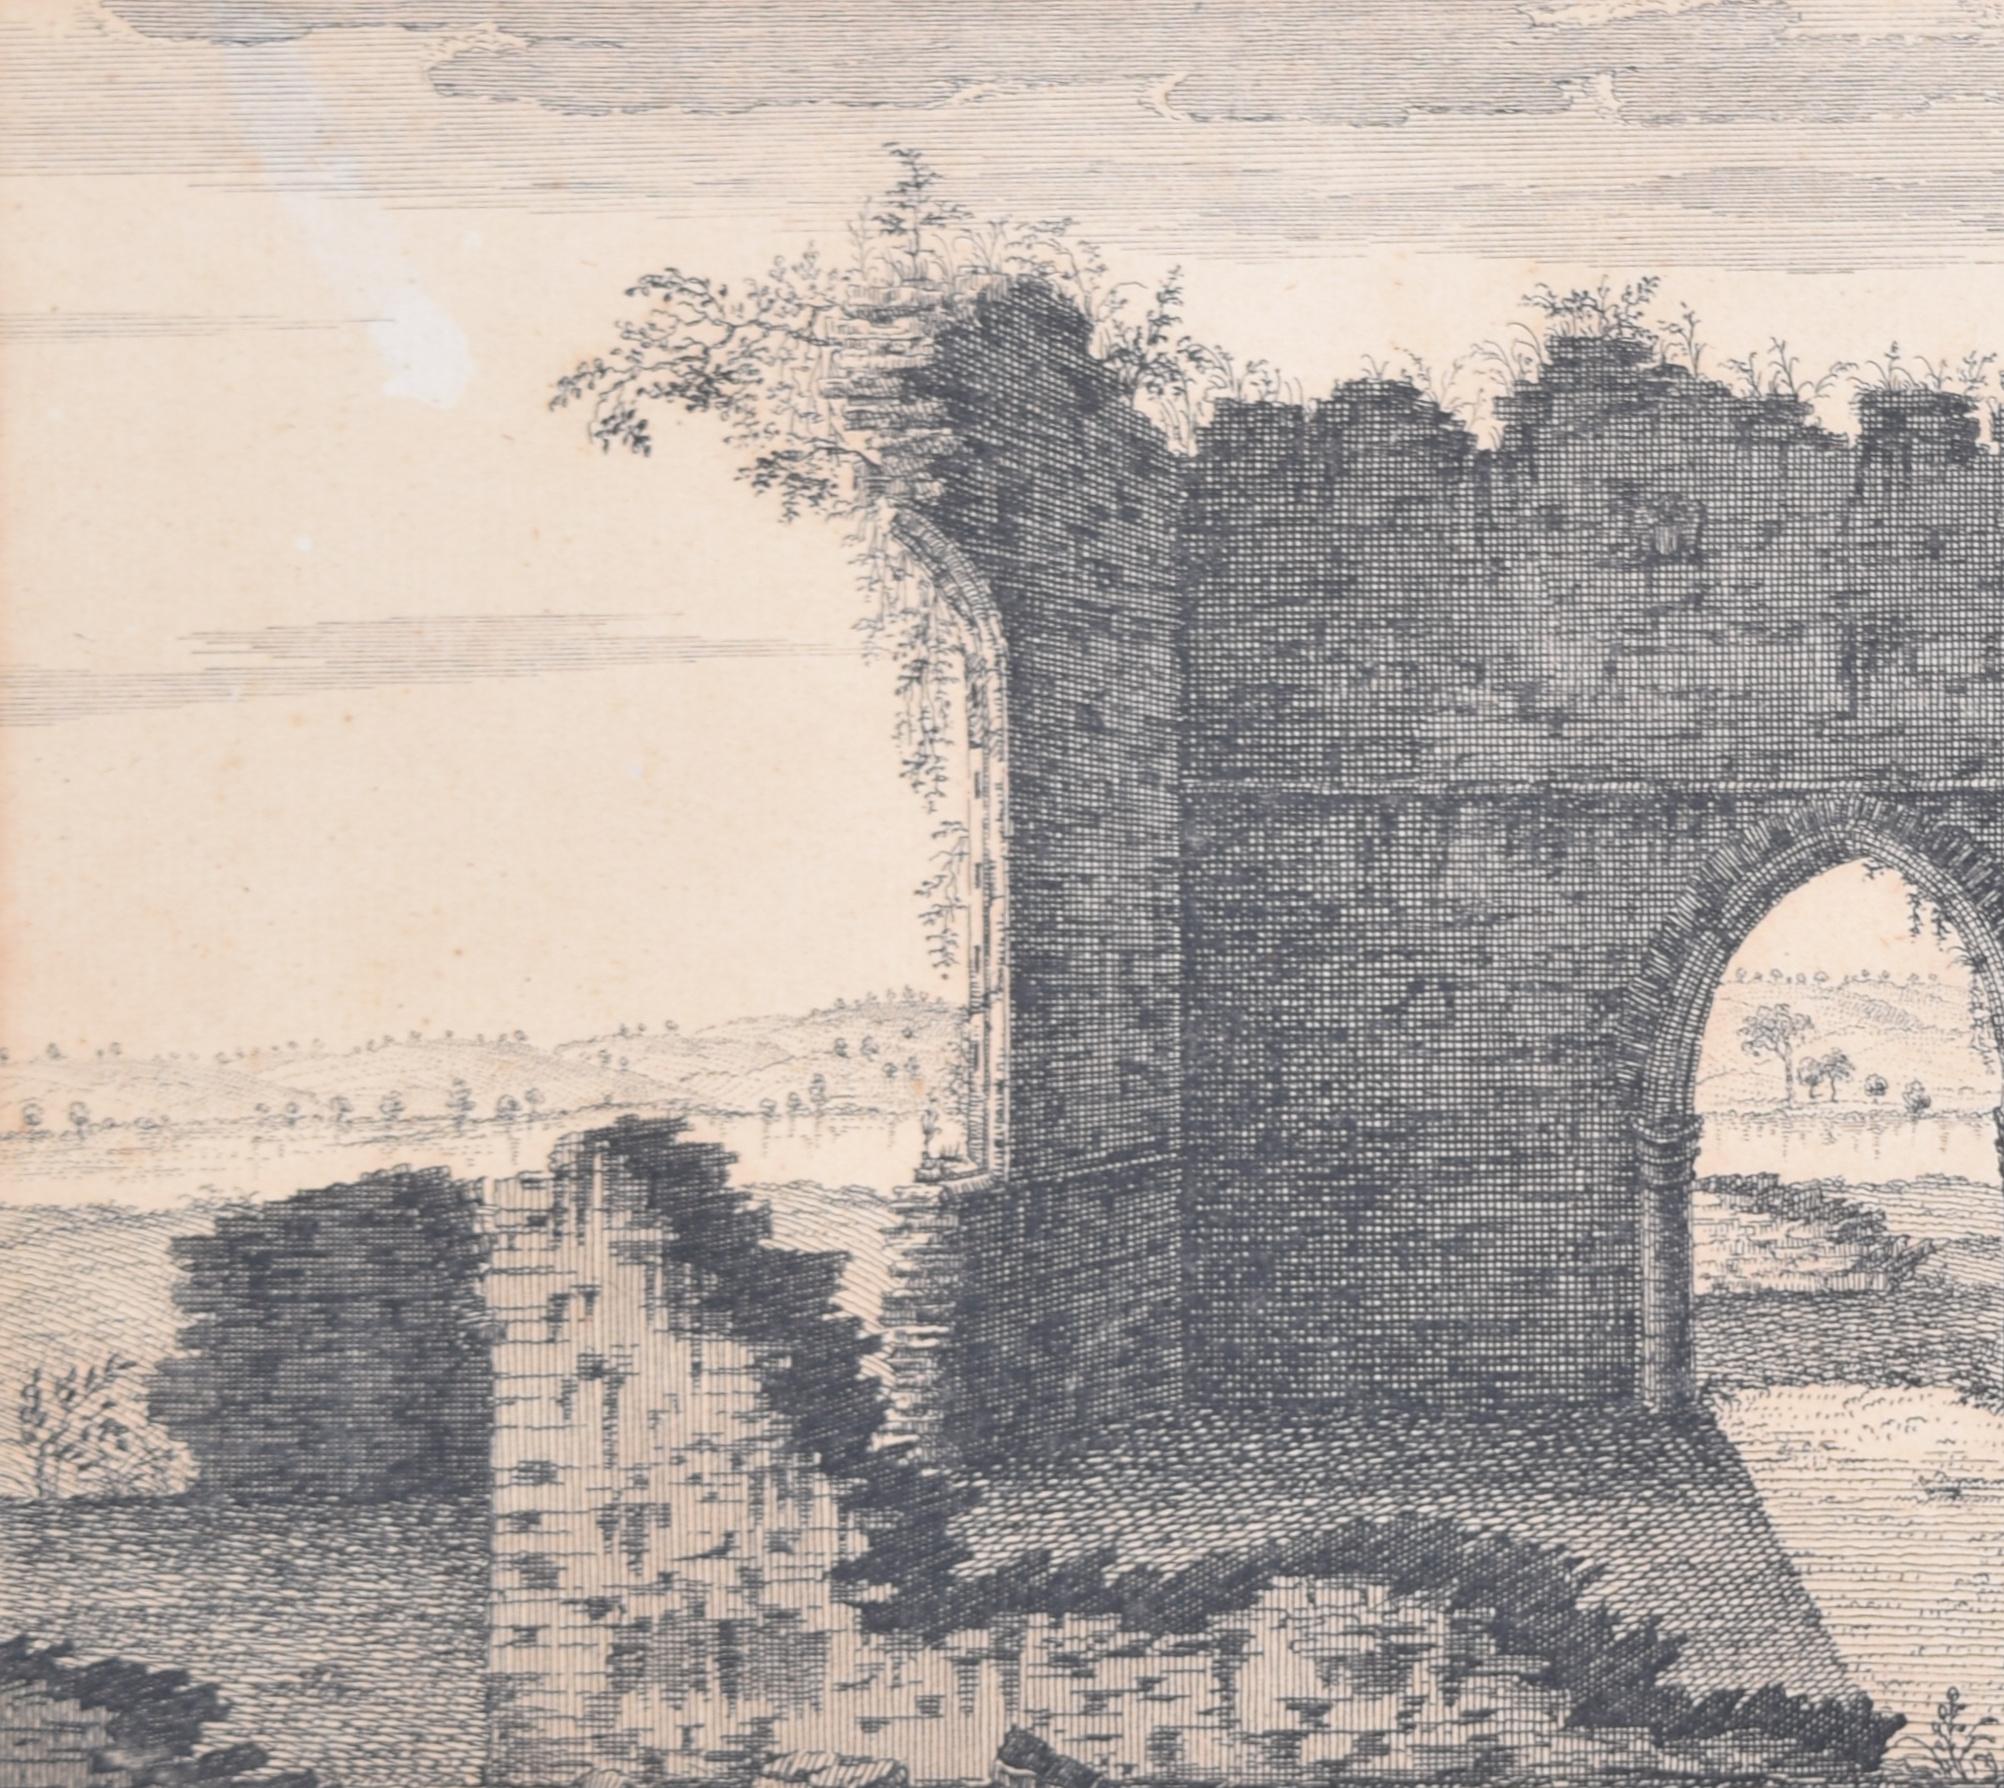 Bindon Abbey, Dorset, Kupferstich nach Samuel und Nathaniel Buck – Print von Samuel & Nathaniel Buck